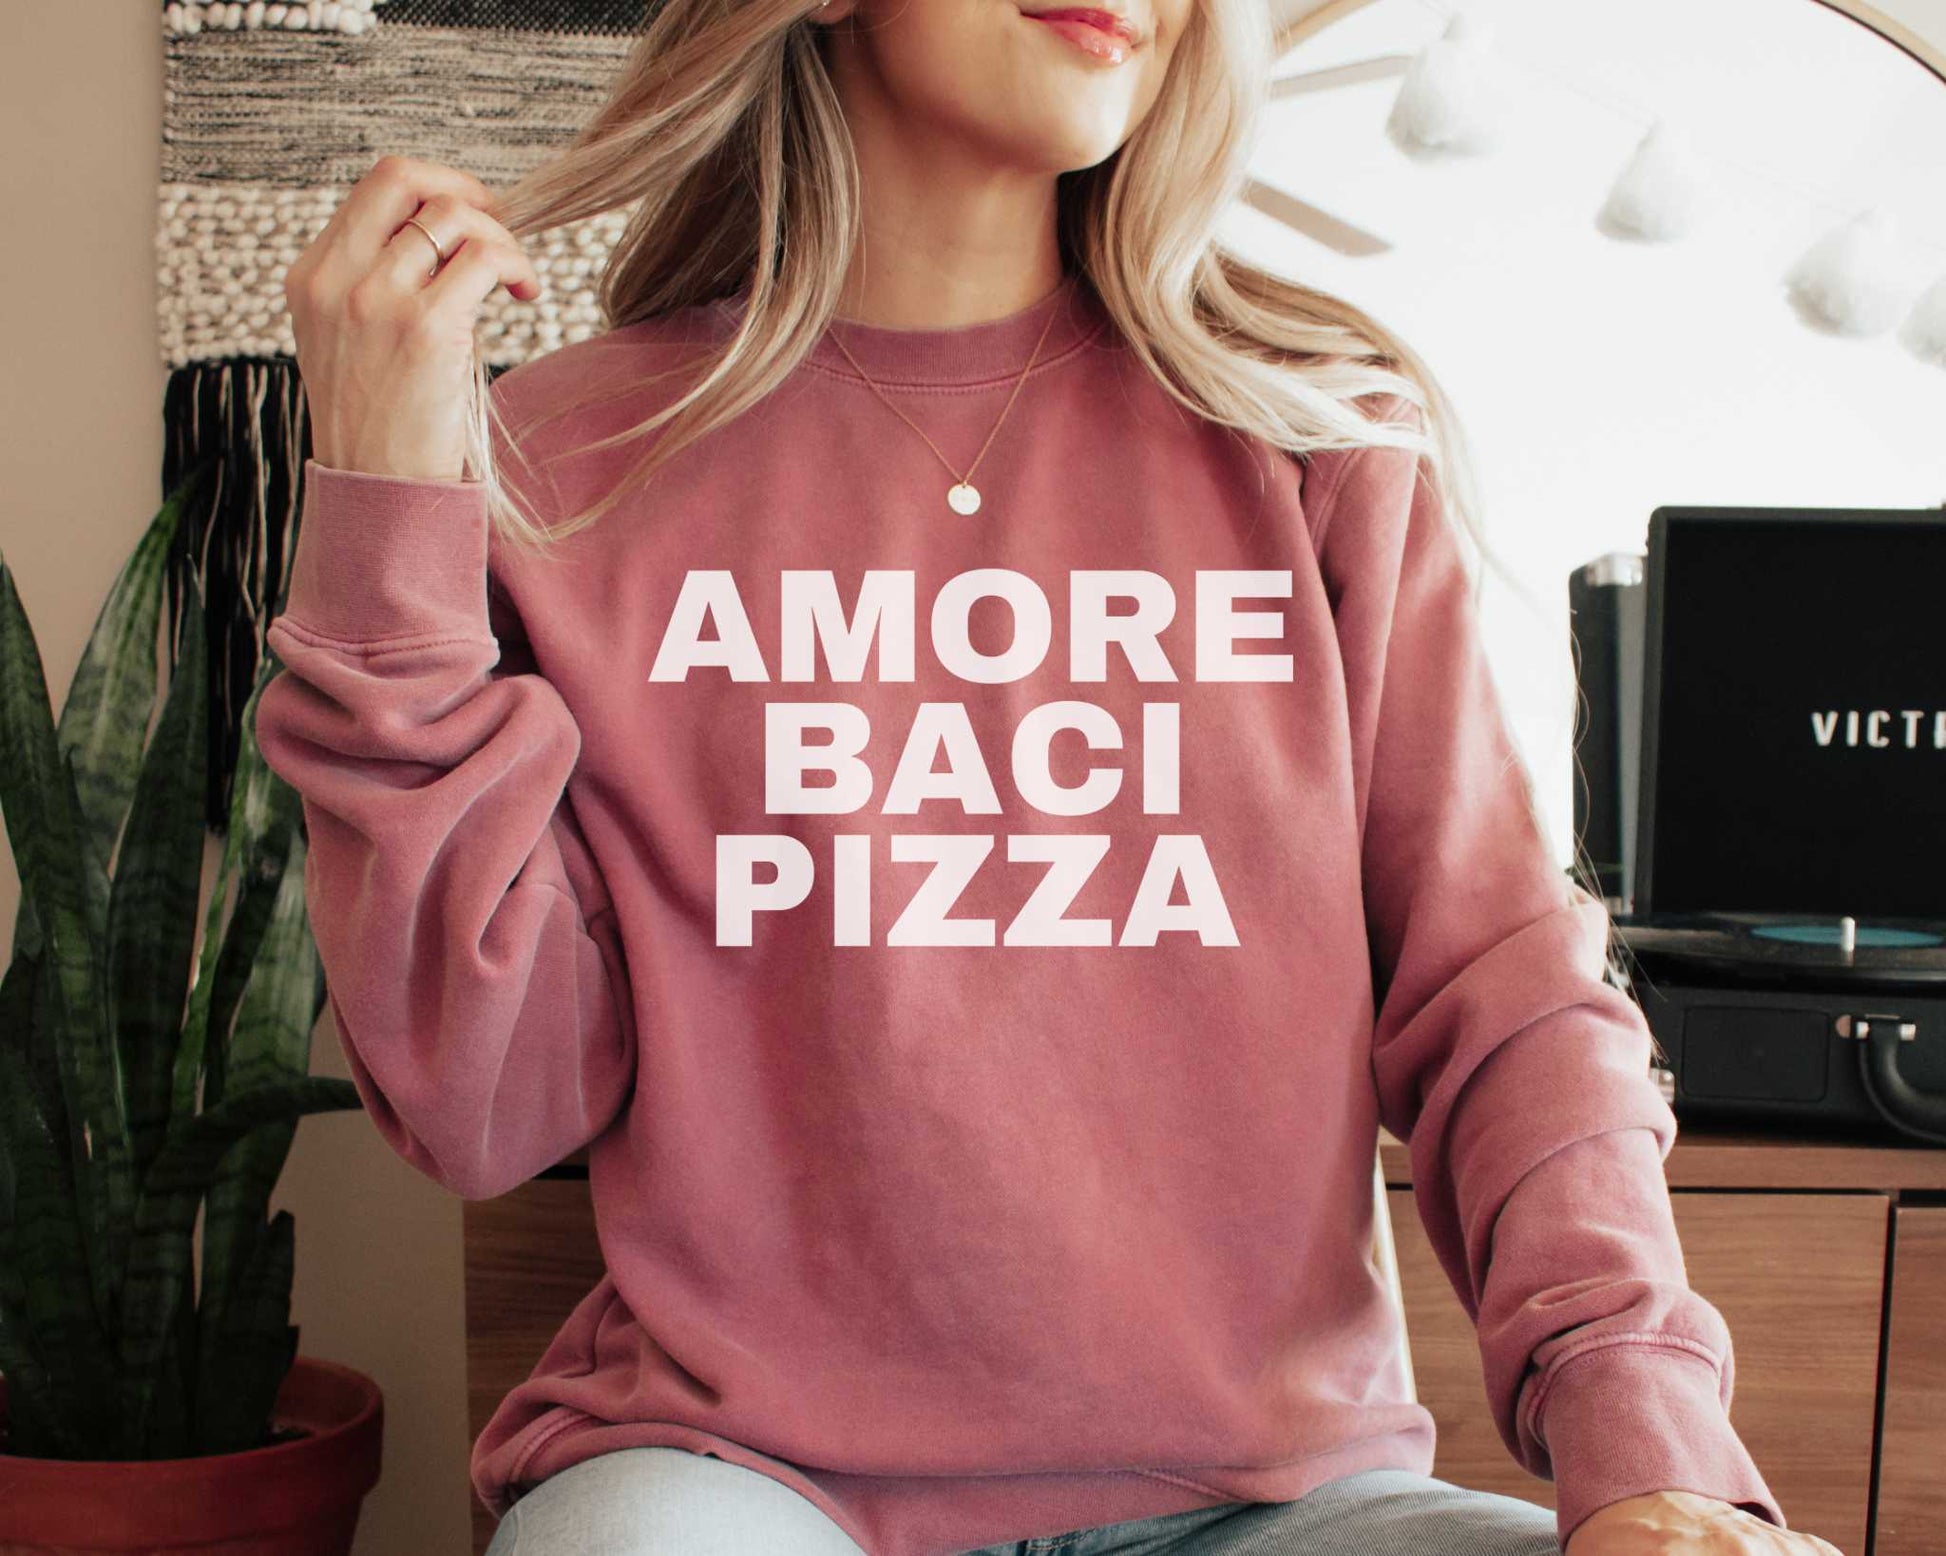 Amore Baci Pizza (Love Kisses Pizza) Sweatshirt in Crimson